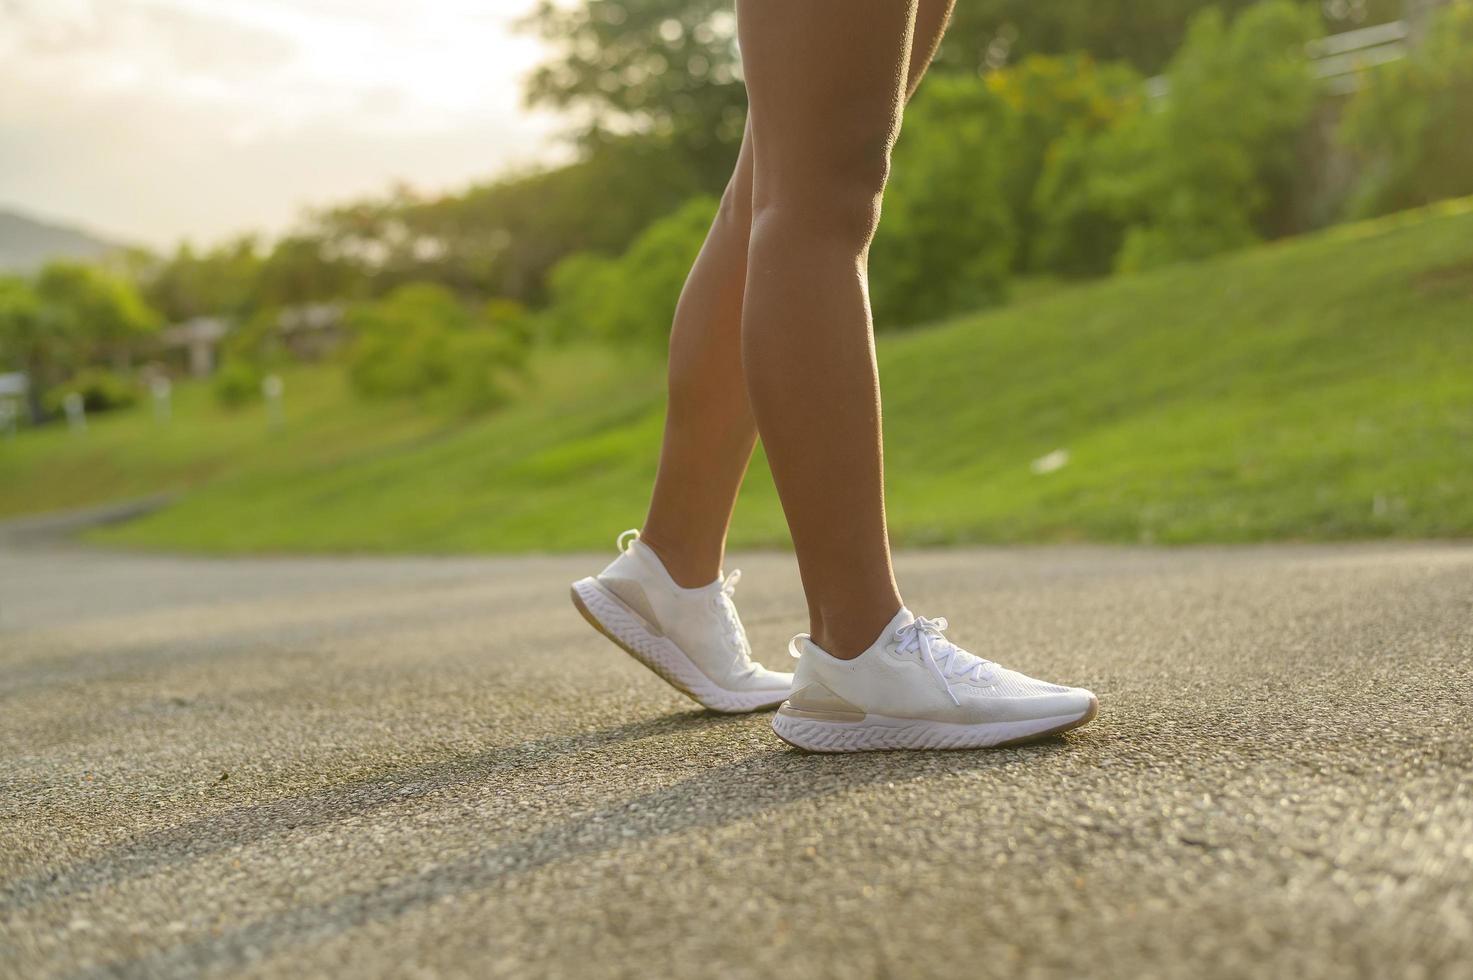 gros plan sur les jambes de la femme sportive en forme dans les chaussures de course, le concept de santé et de sport. photo